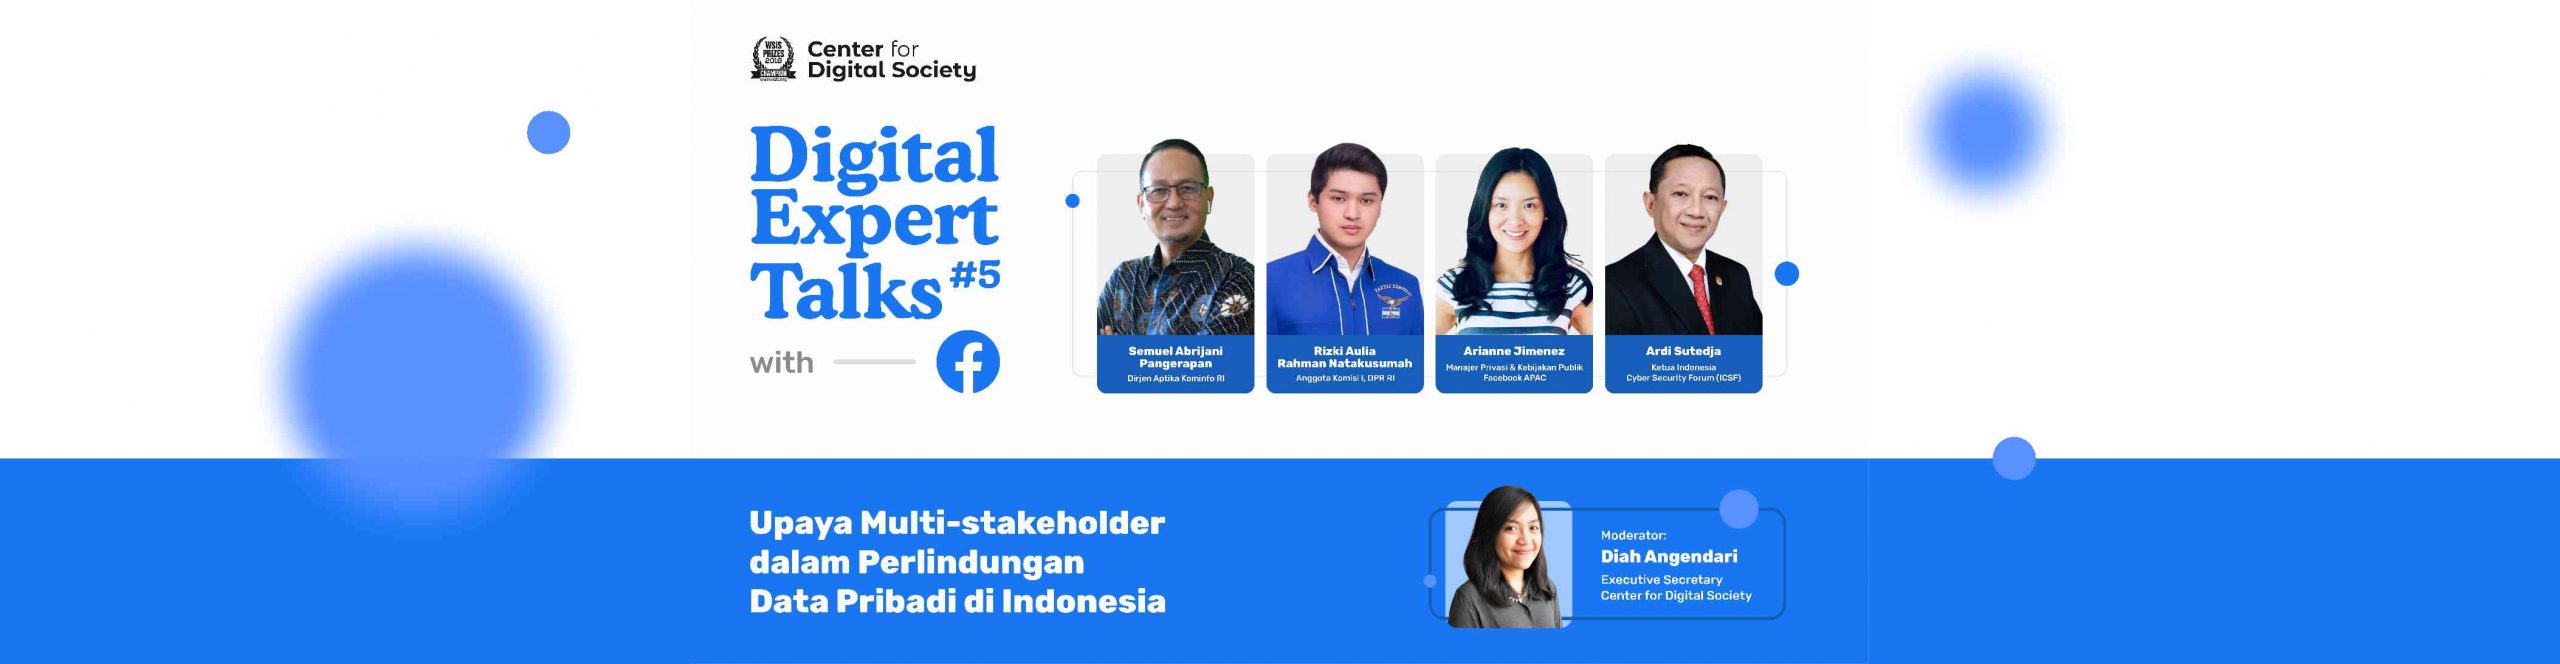 [SIARAN PERS] Upaya Multi-Stakeholder dalam Perlindungan Data Pribadi di Indonesia| Digital Expert Talks #6 with Meta